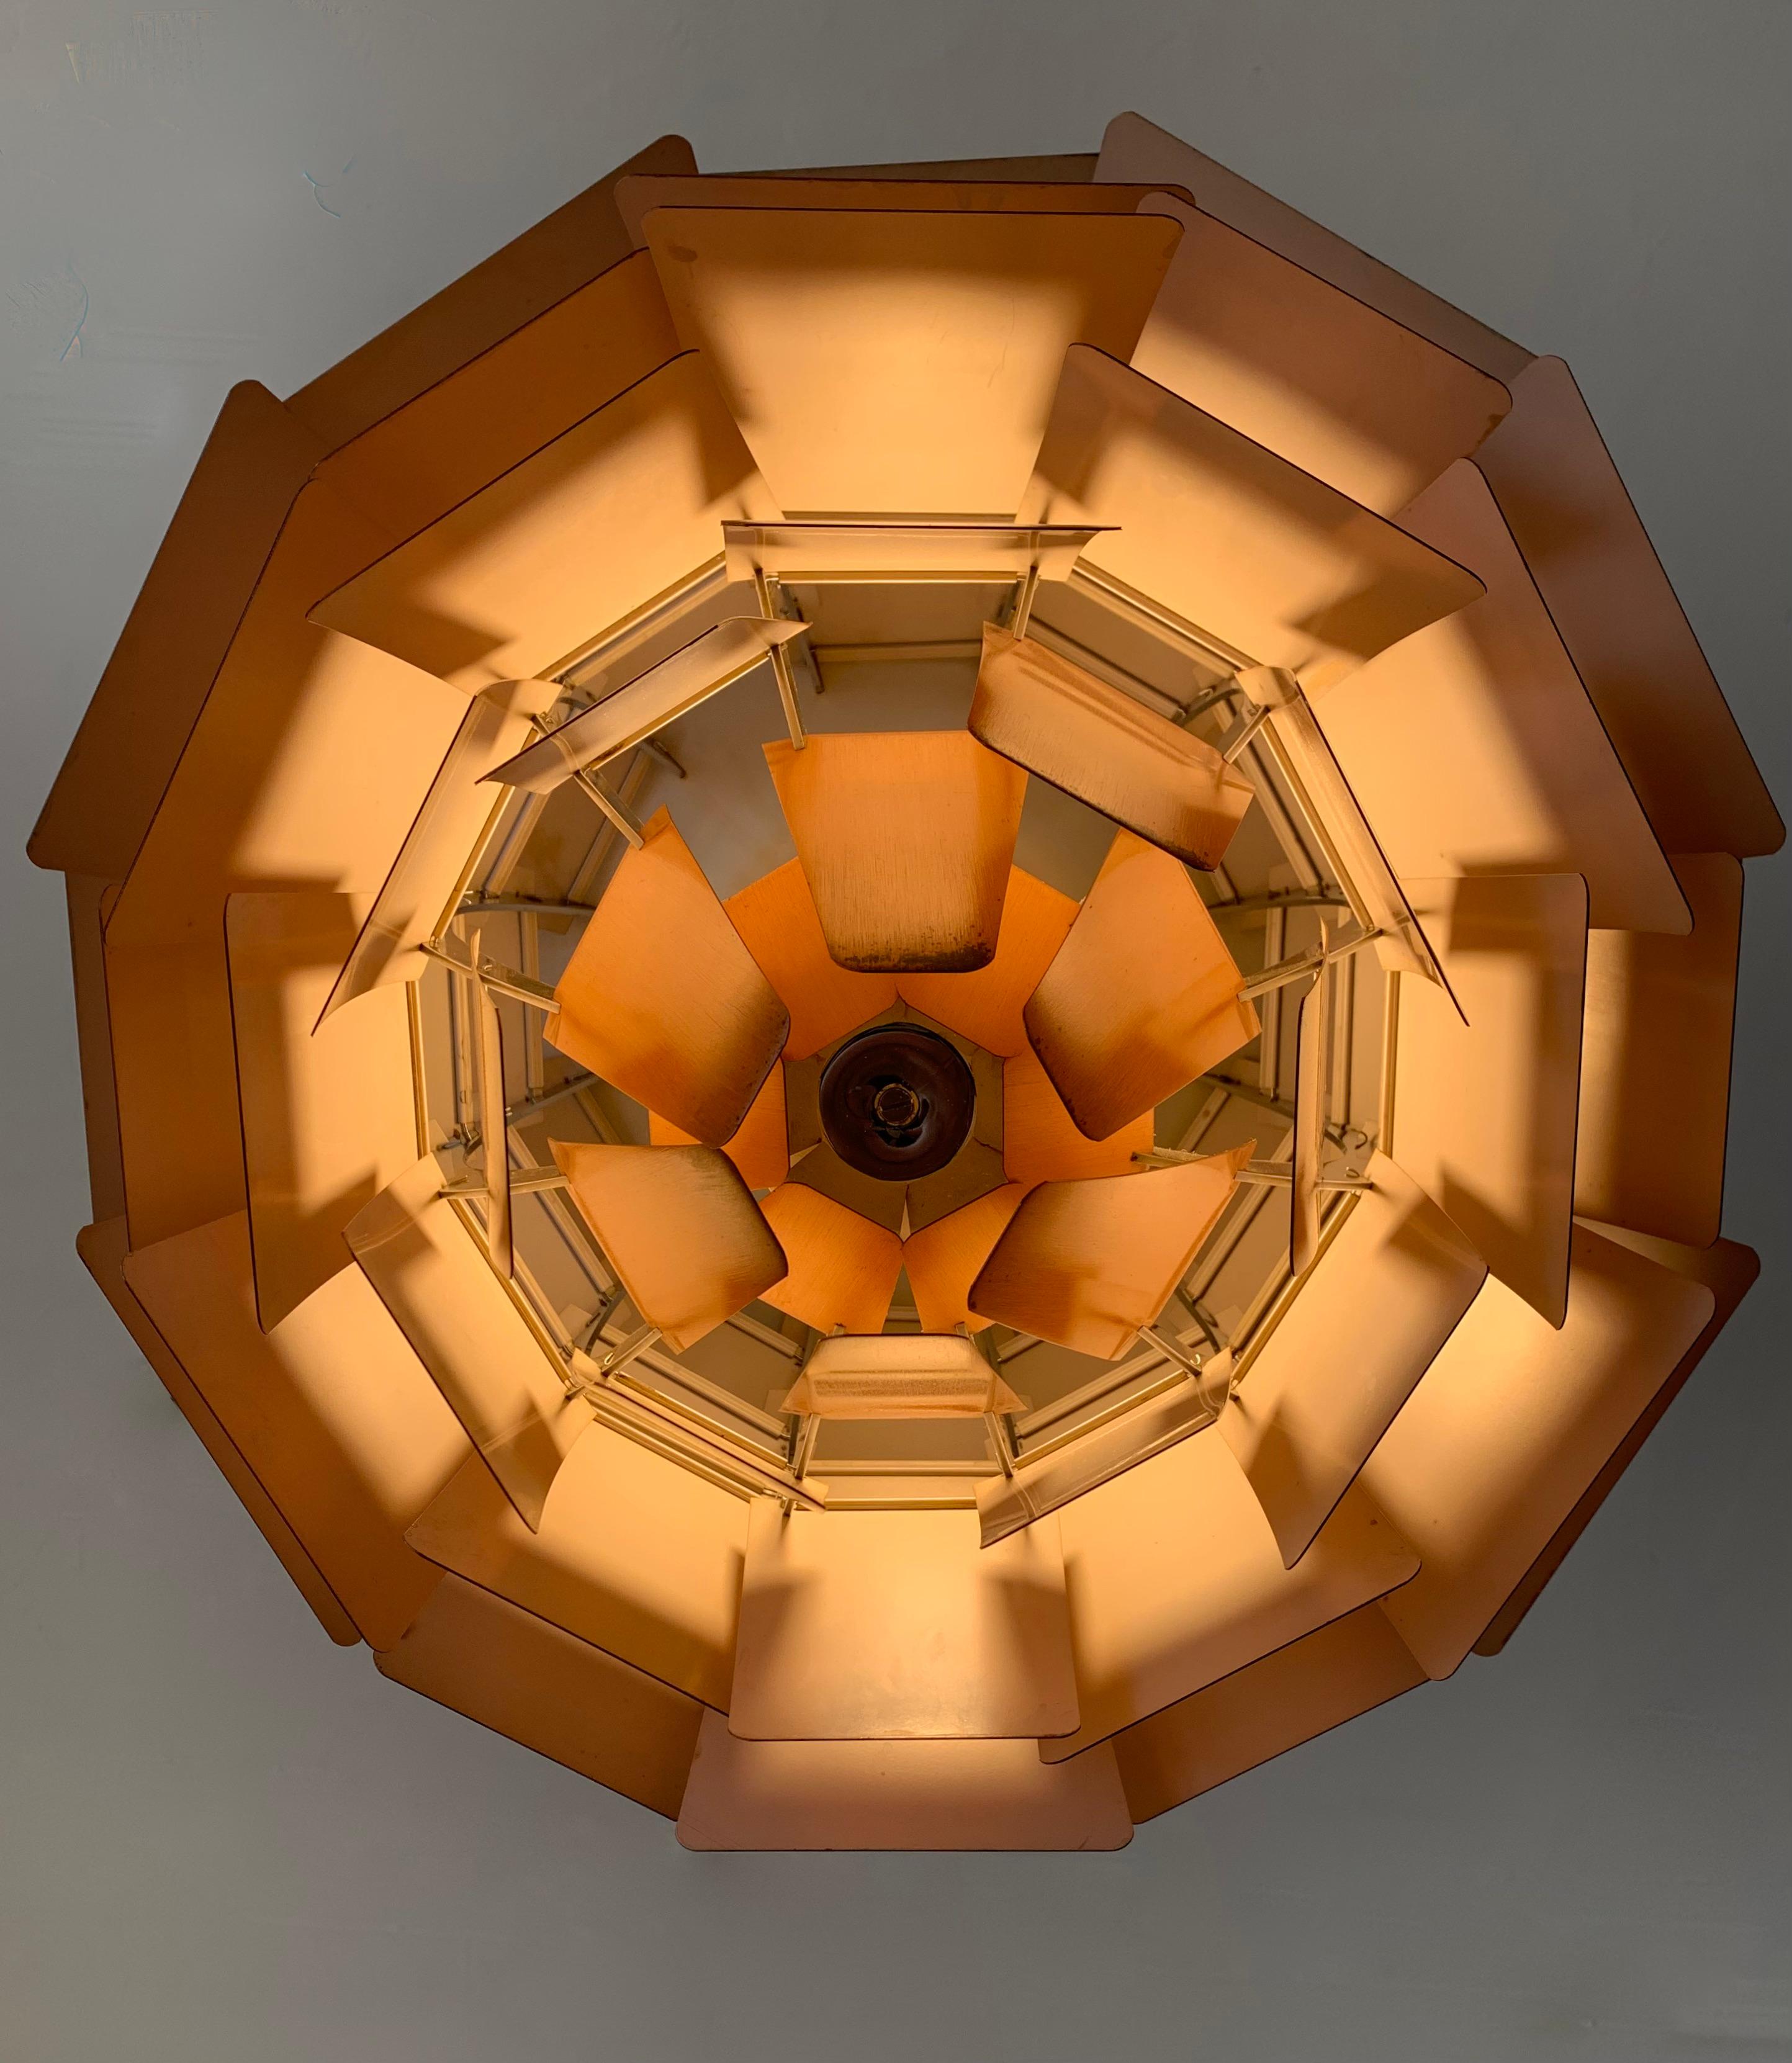 Lampe iconique Artichoke de Poul Henningsen, produite en début de série, en cuivre étonnamment vieilli. 
Ce pendentif provient d'une période de production précoce, comme en témoigne la couleur du dessous des feuilles de cuivre. 
Elle a été conçue en